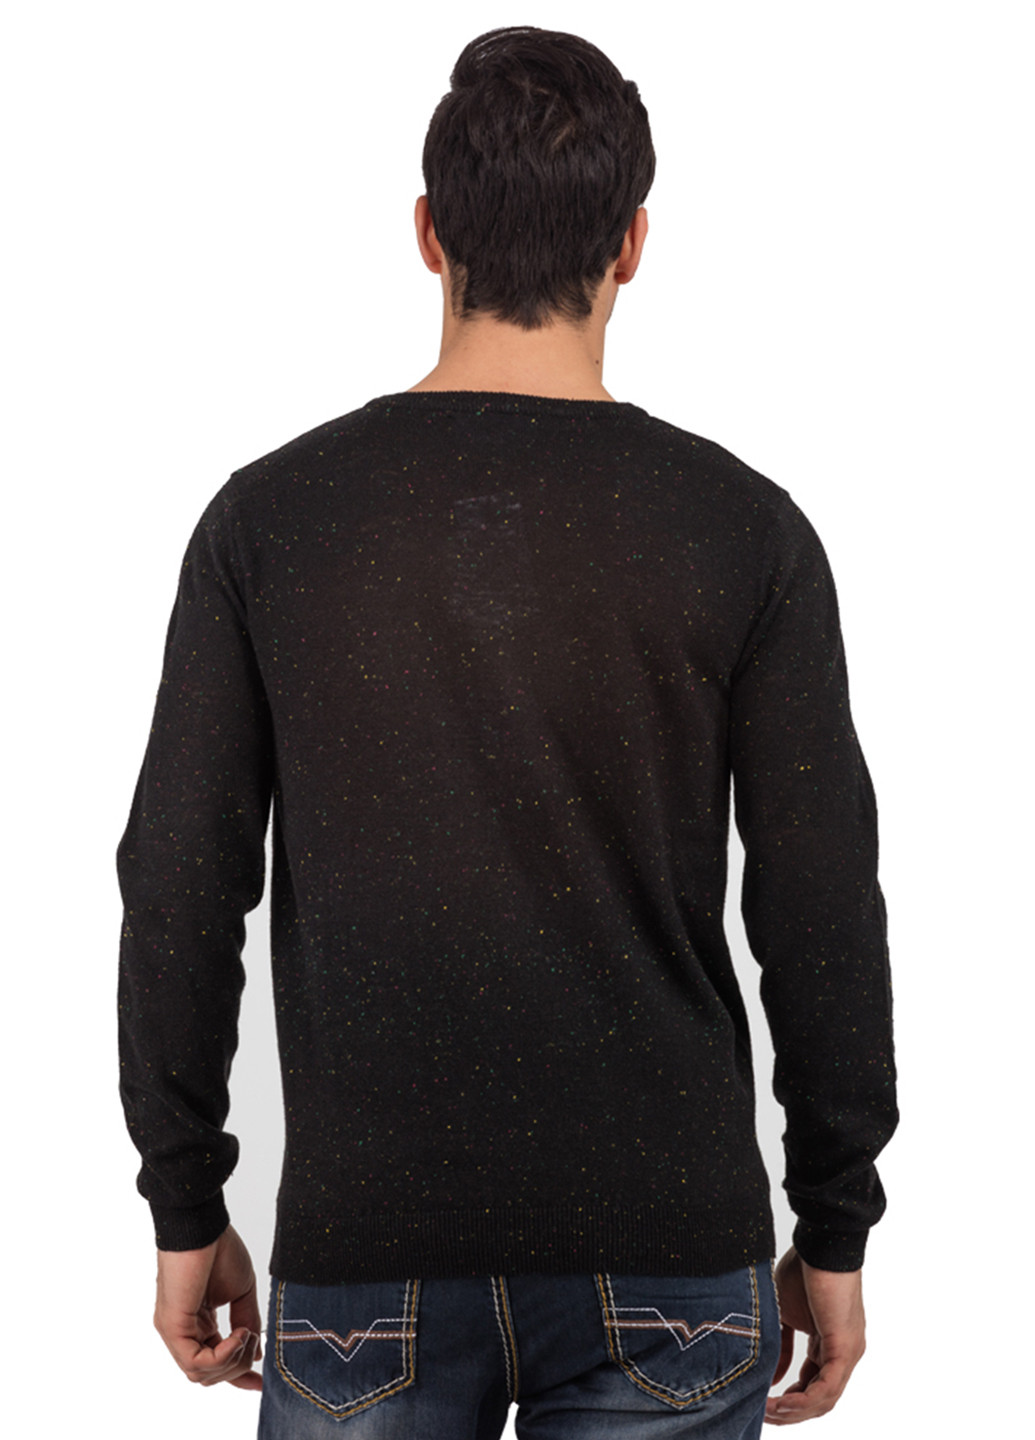 Черный демисезонный свитер джемпер Яavin